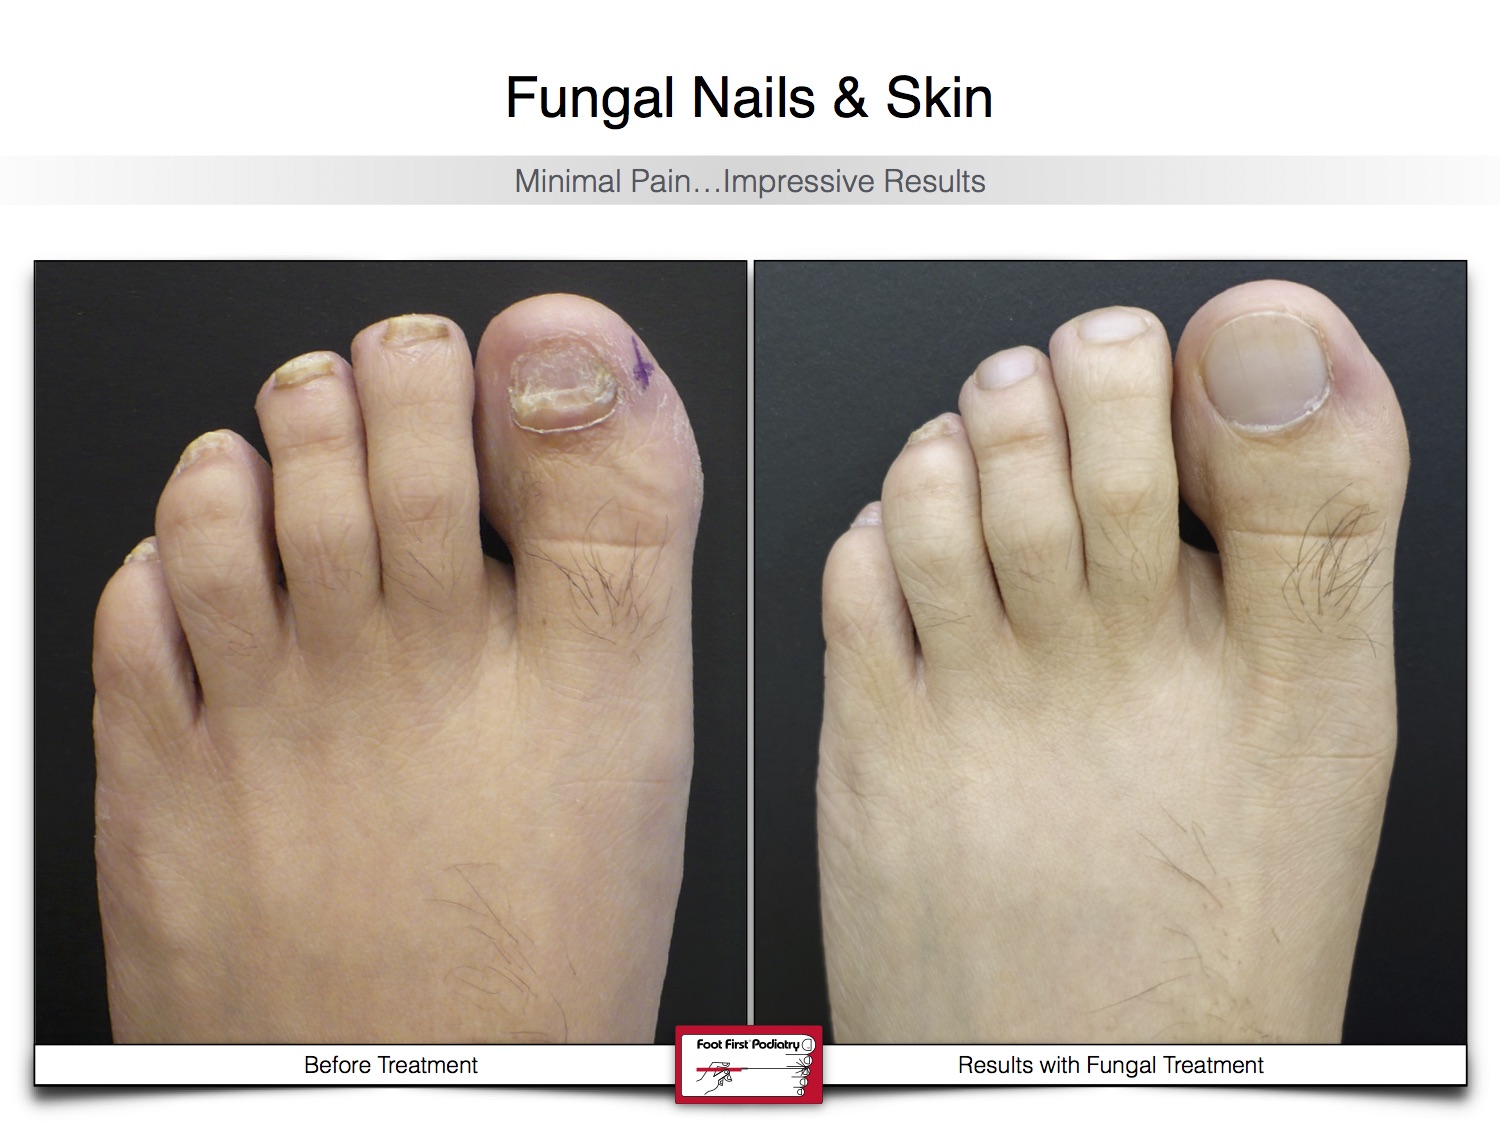 Fungal Nails & Skin 02.16 24.jpg